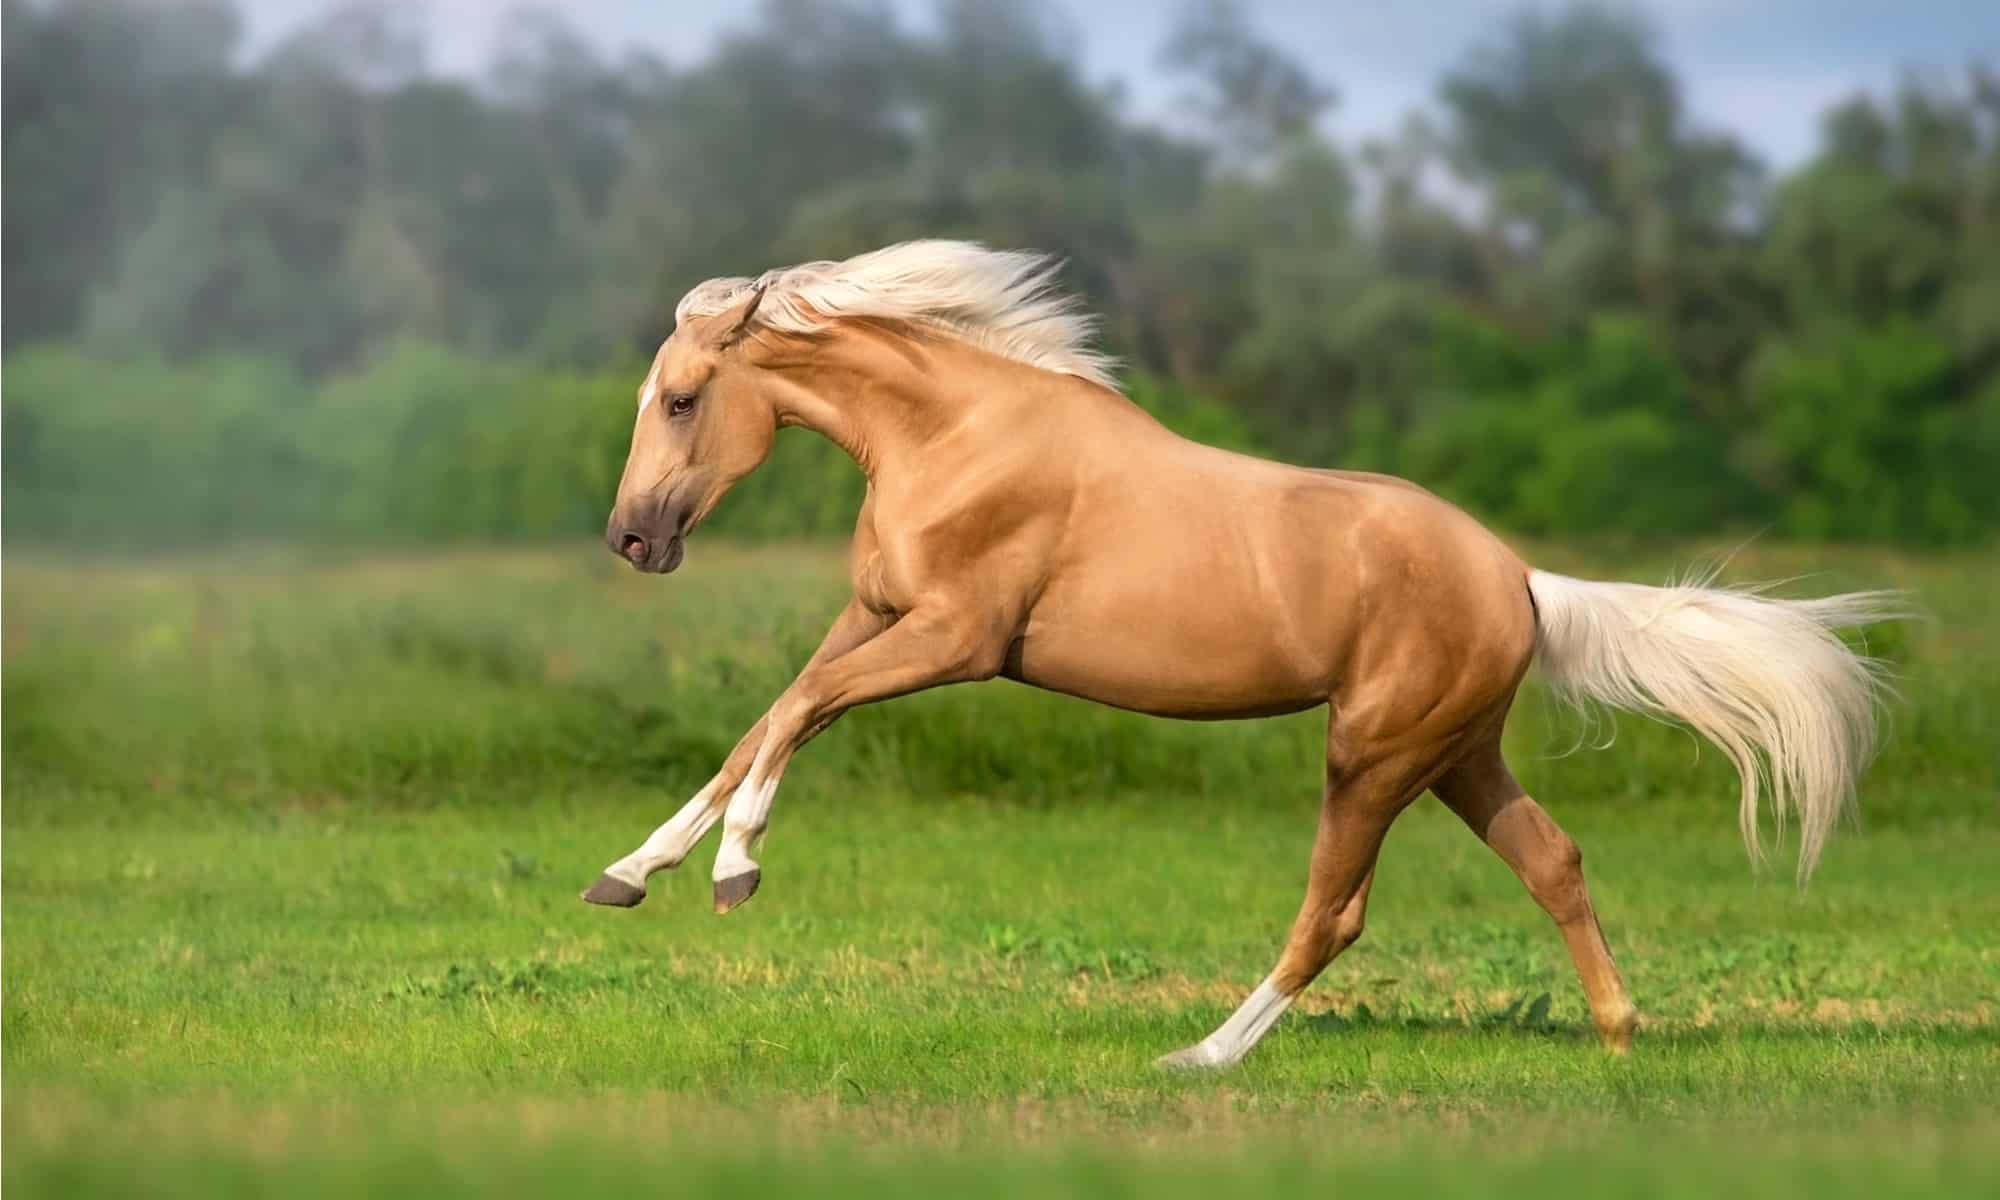 Cavallo Palomino con lunga criniera libera corsa nel prato verde.